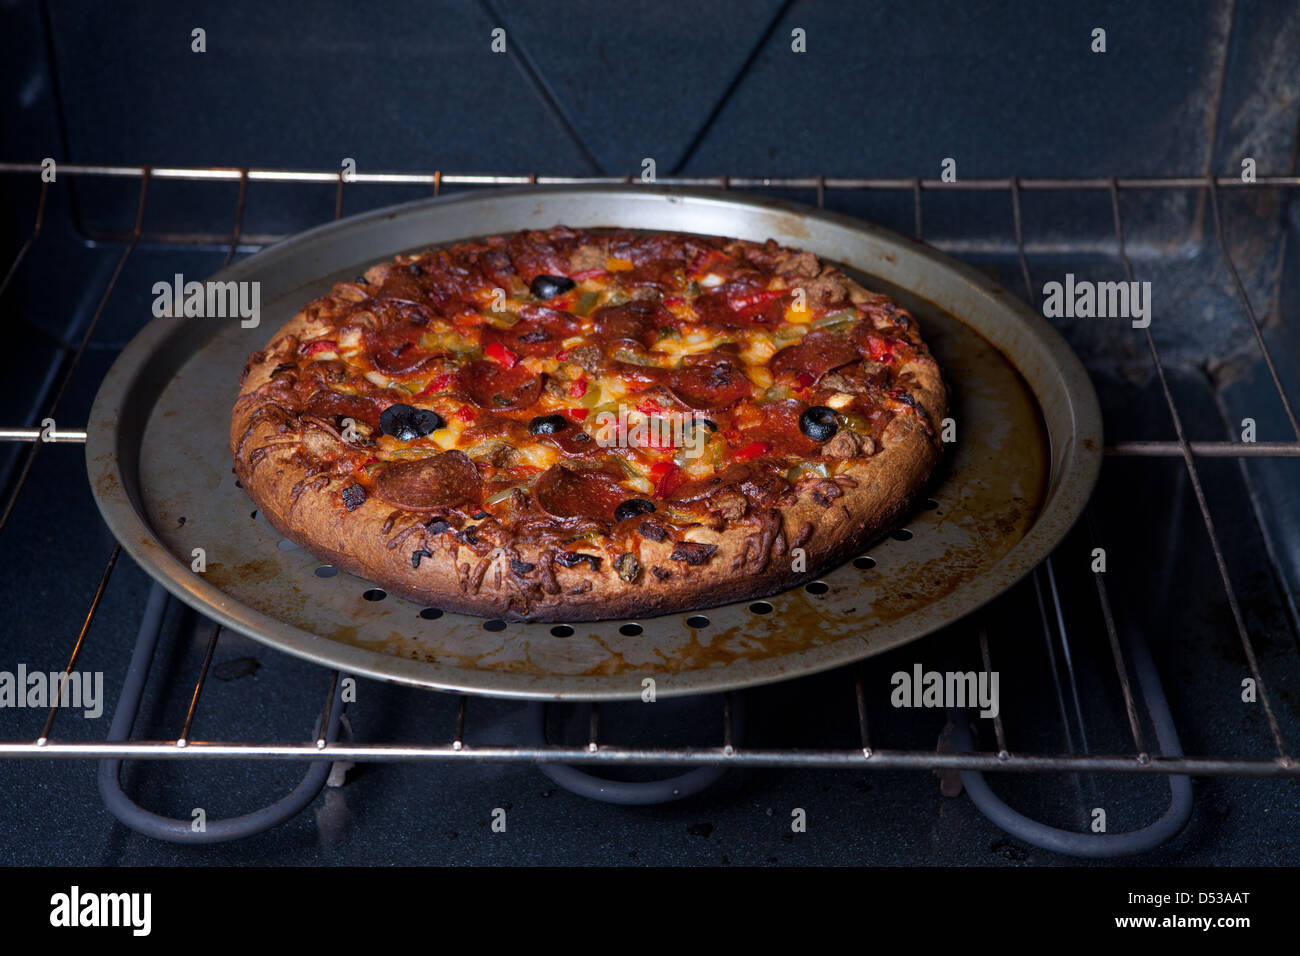 Pizza croustillante cuite au four Photo Stock - Alamy